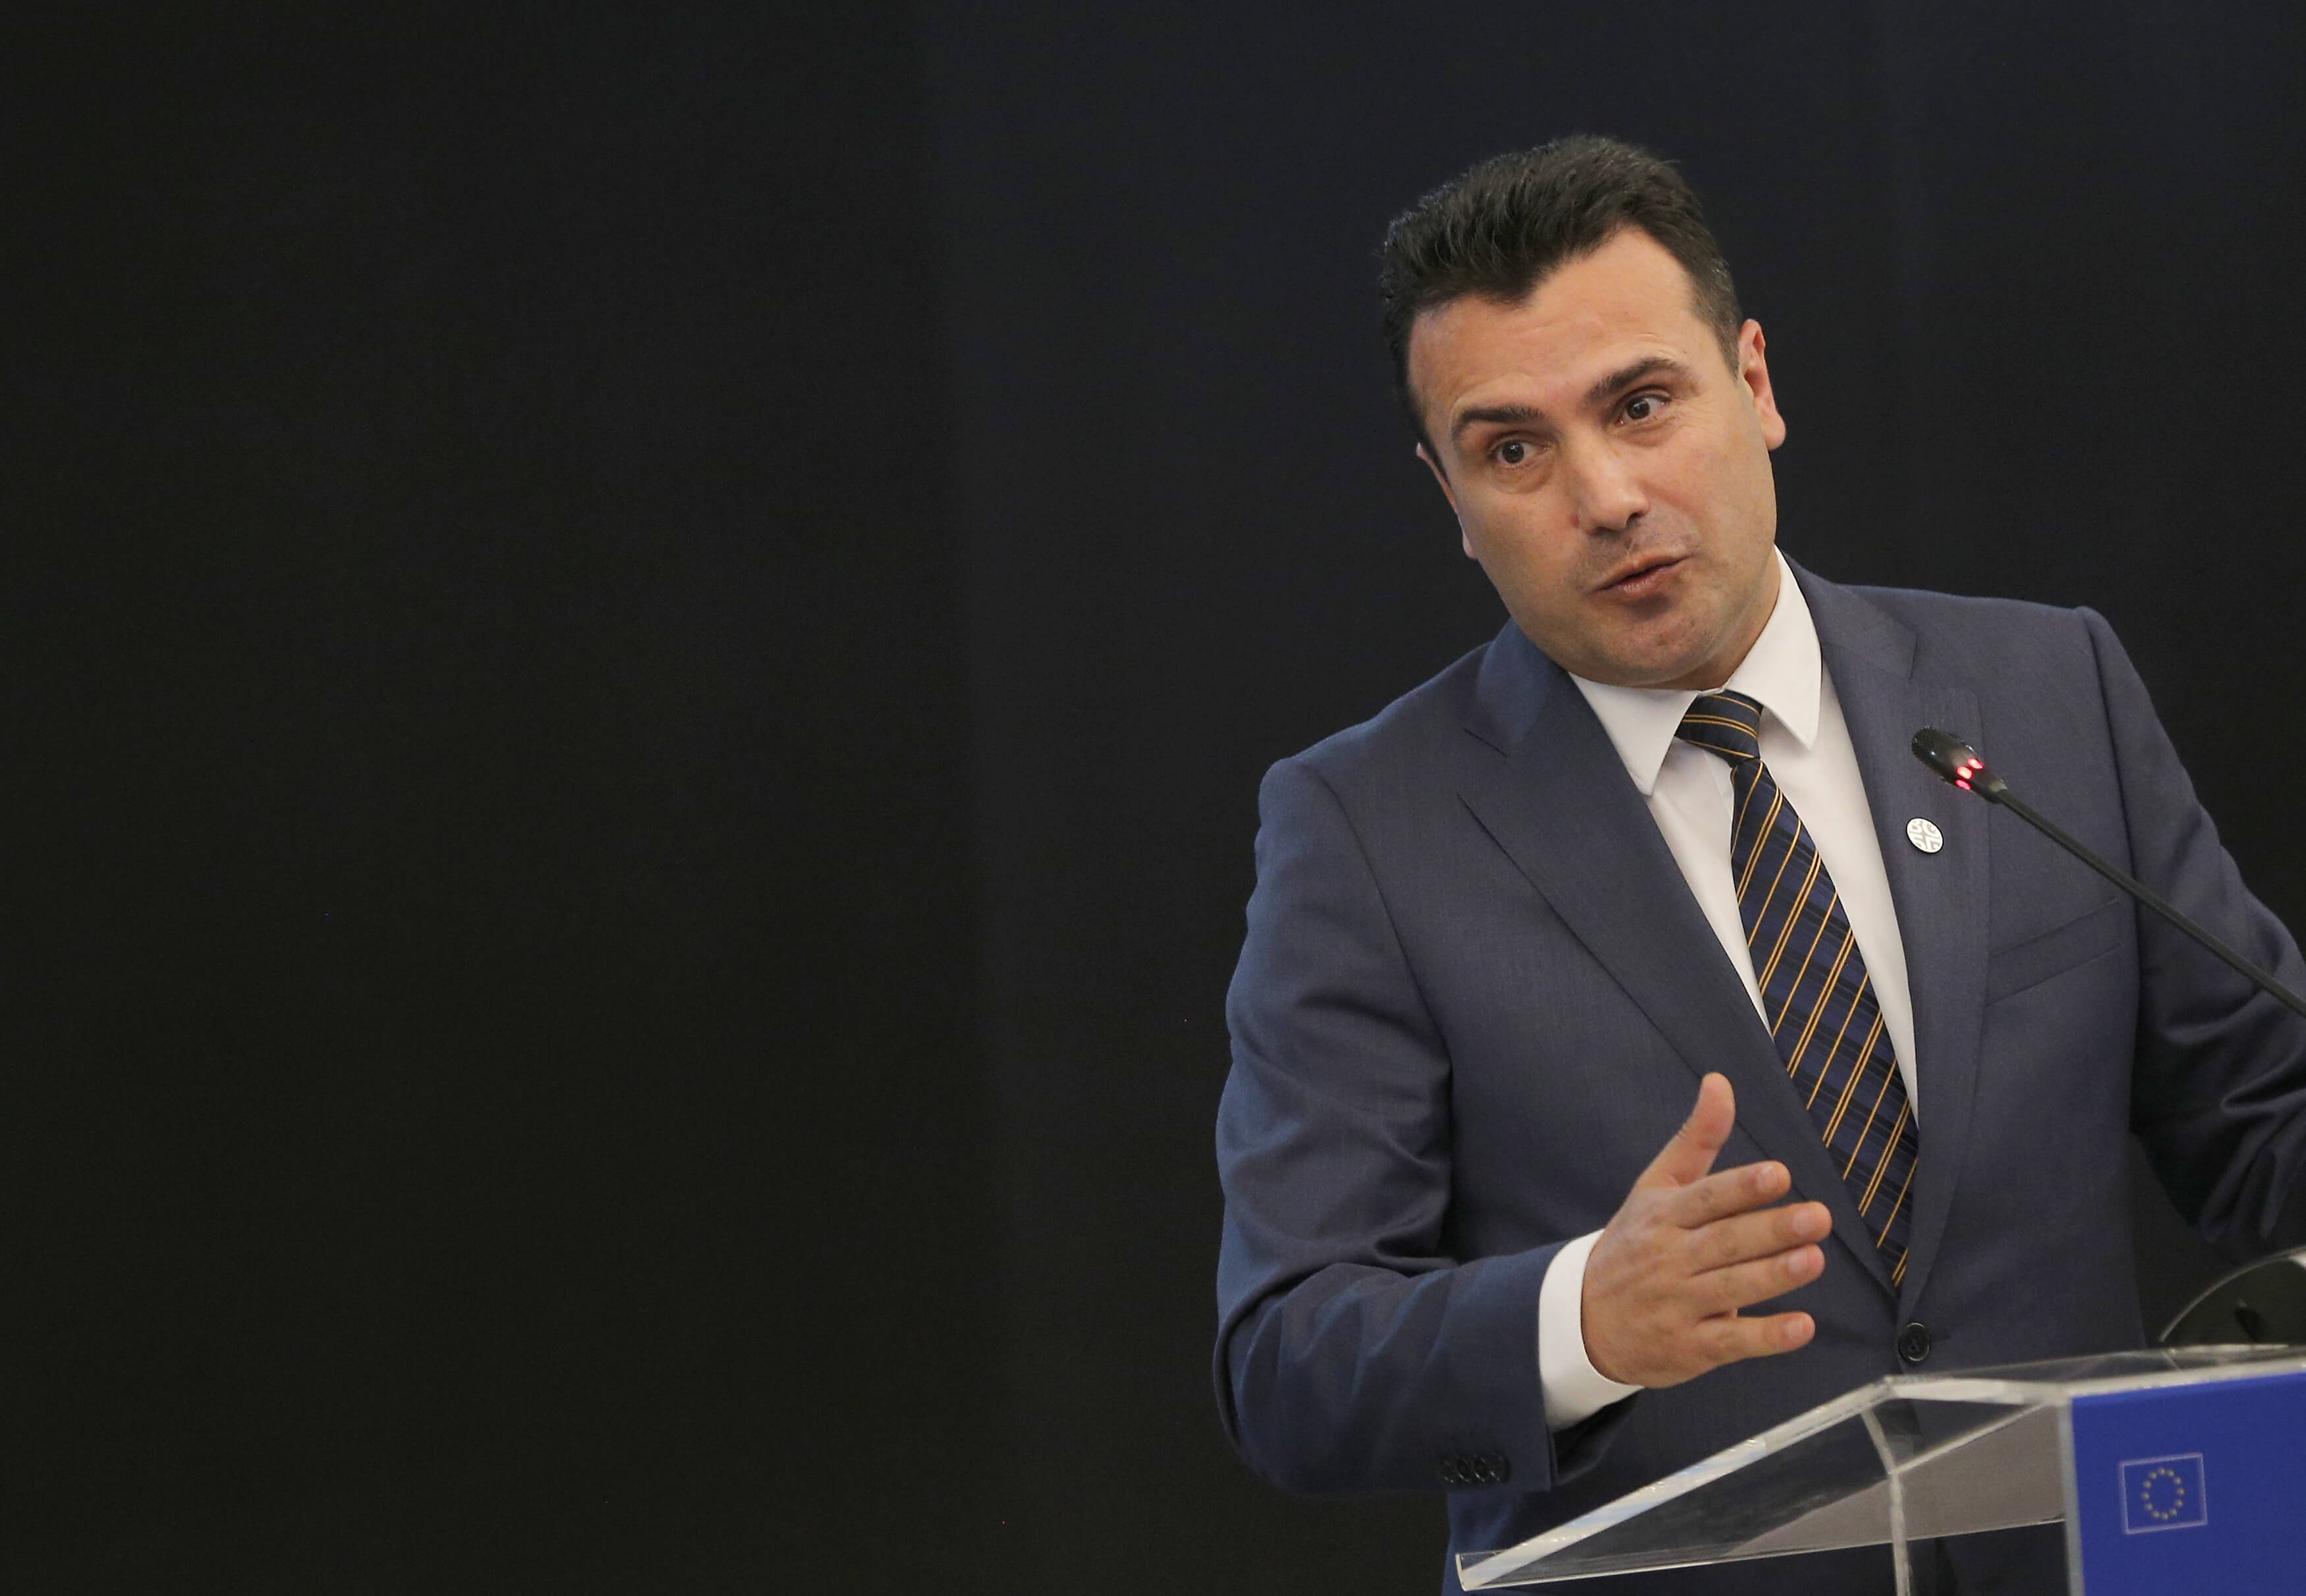 Ζάεφ: Έχουμε μια χώρα που κανείς δεν αμφισβητεί πια, όπου μιλάμε τη “μακεδονική” γλώσσα